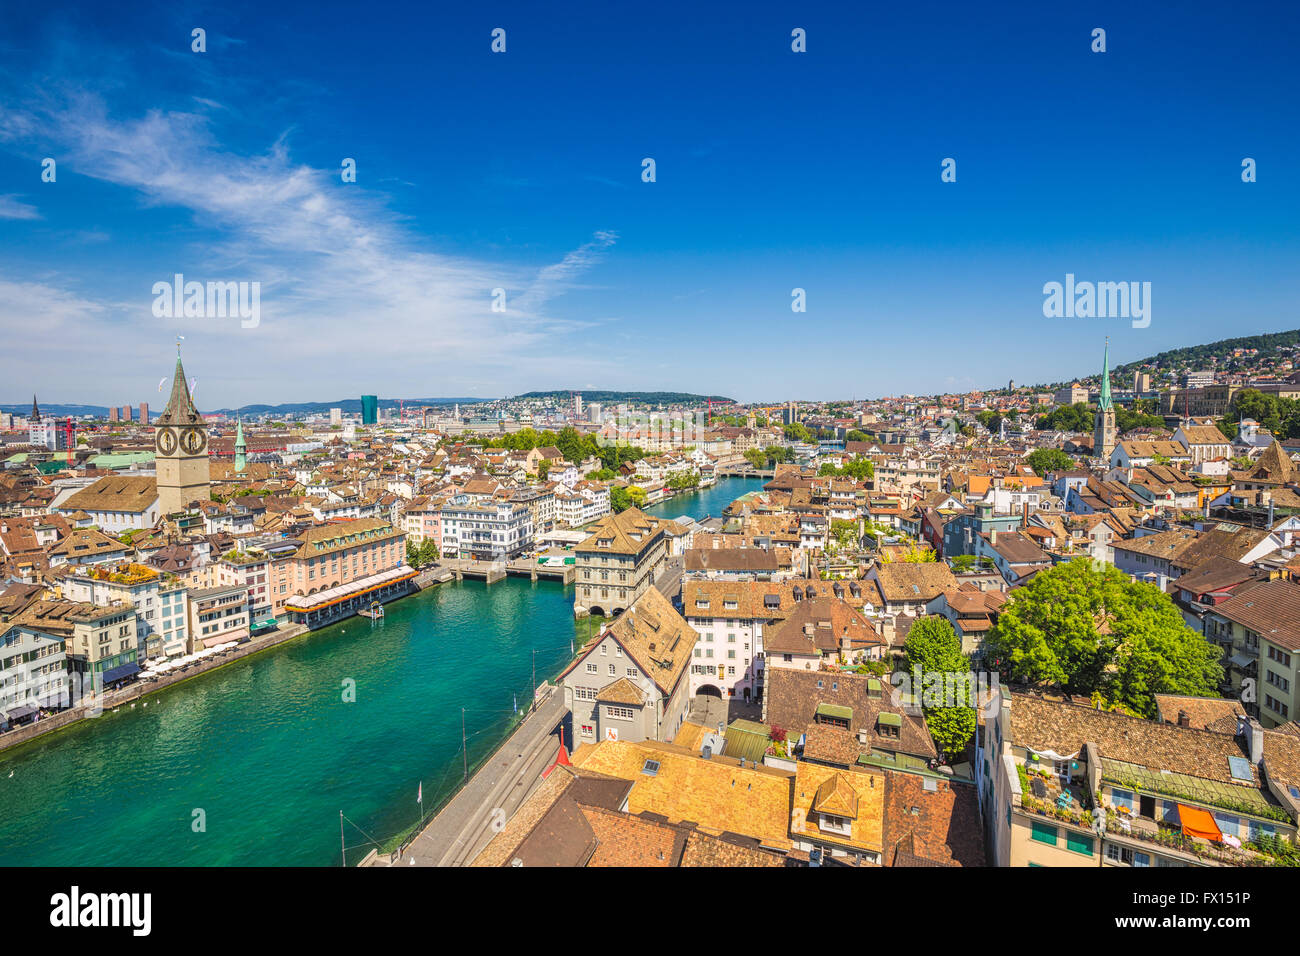 Vue aérienne de la ville historique de Zürich avec rivière Limmat en été, Suisse Banque D'Images